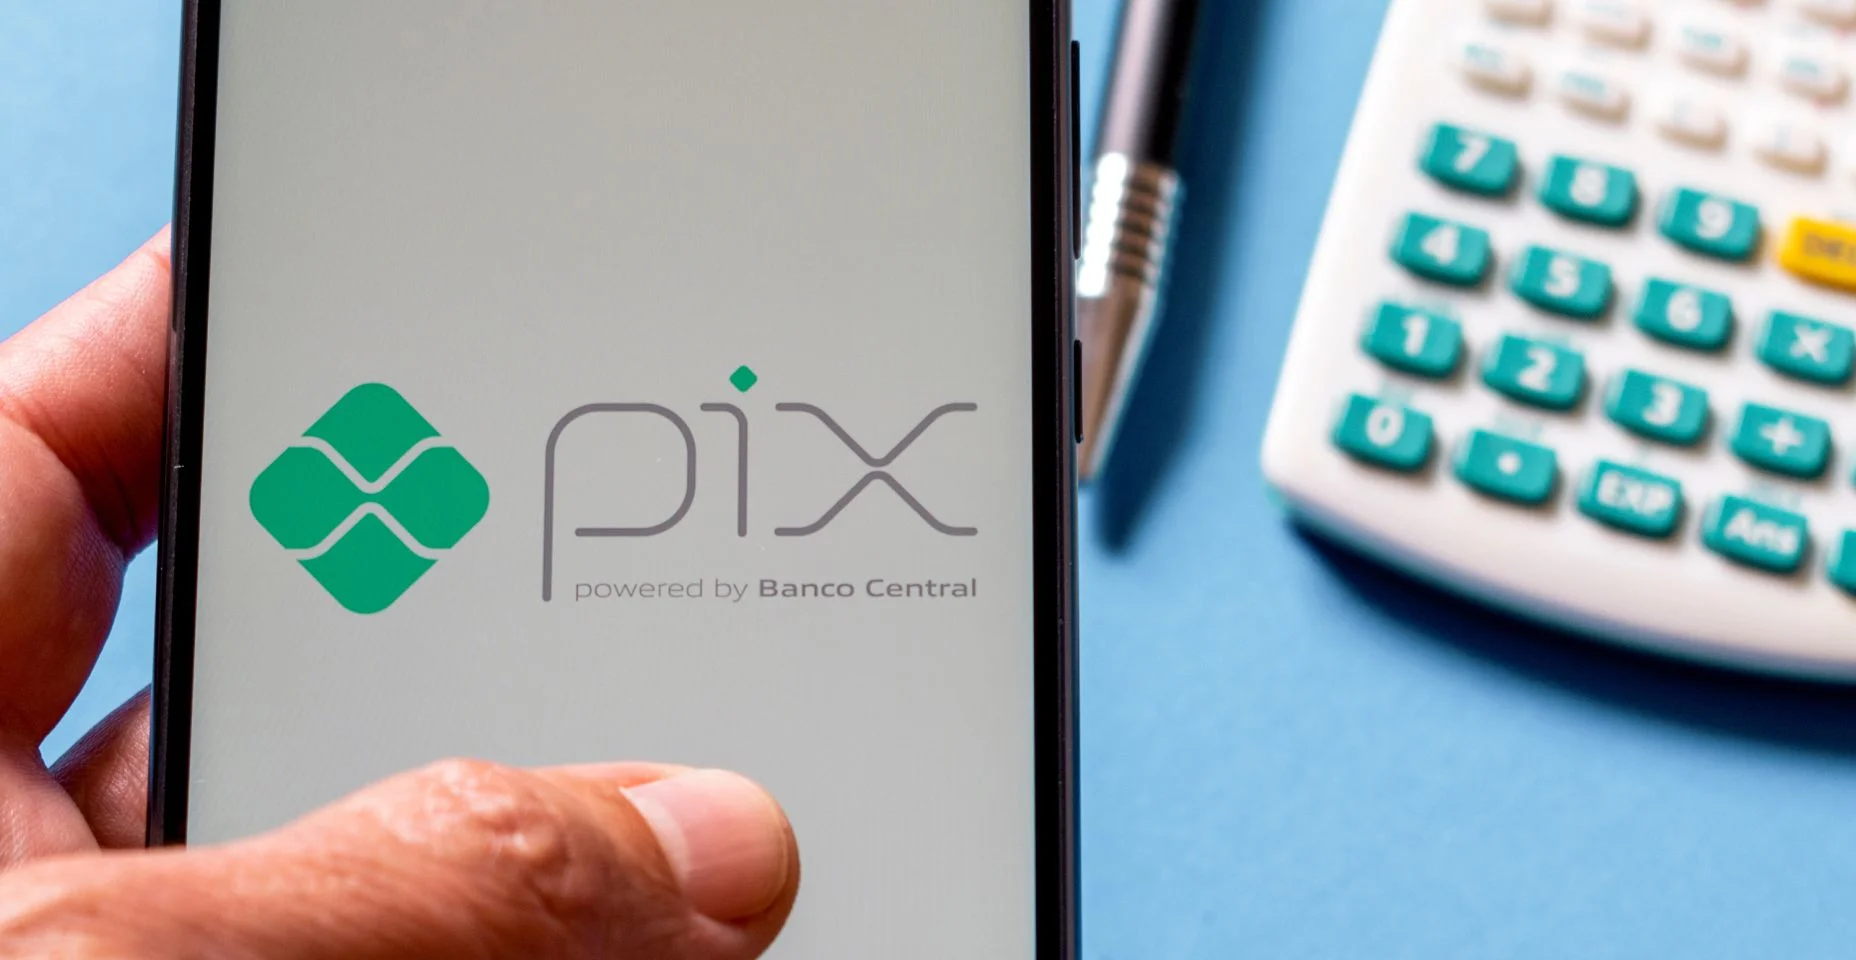 Mão segurando smartphone com aplicativo Pix, em cima da mesa com calculadora e caneta. Pix é o novo sistema de pagamentos instantâneos do Banco Central do Brasil.